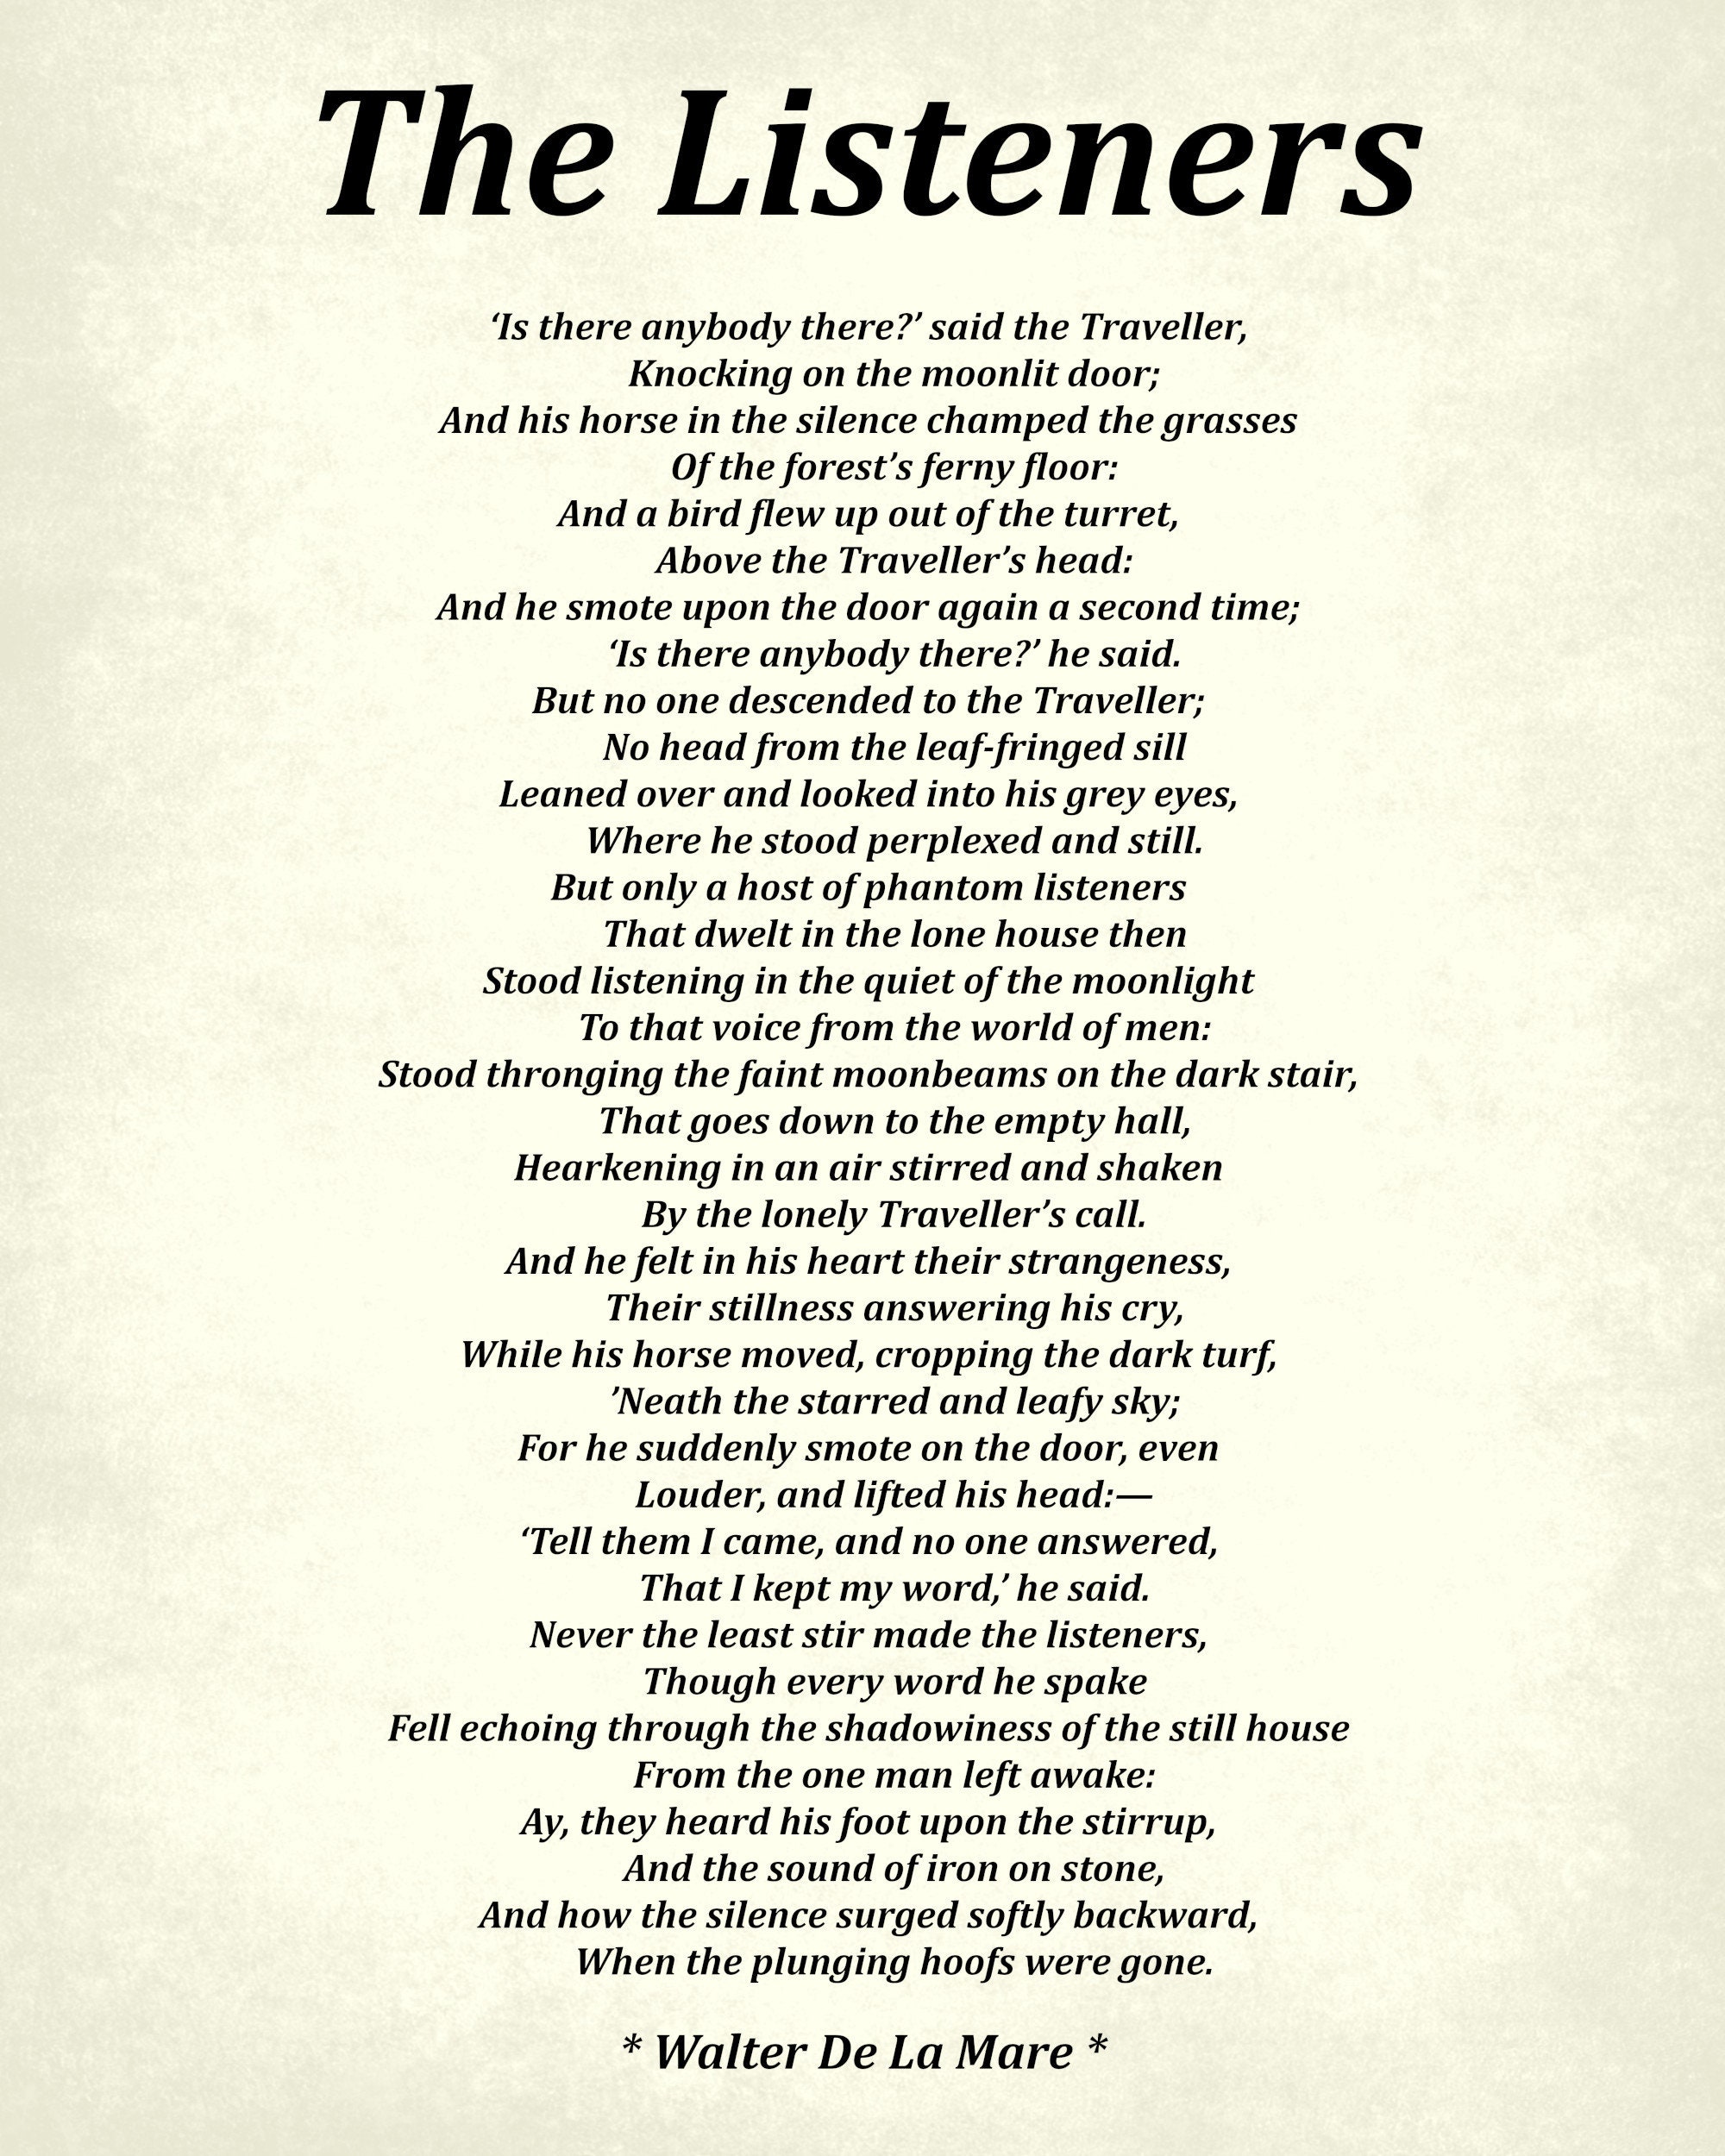 Hide And Seek Poem by Walter De La Mare